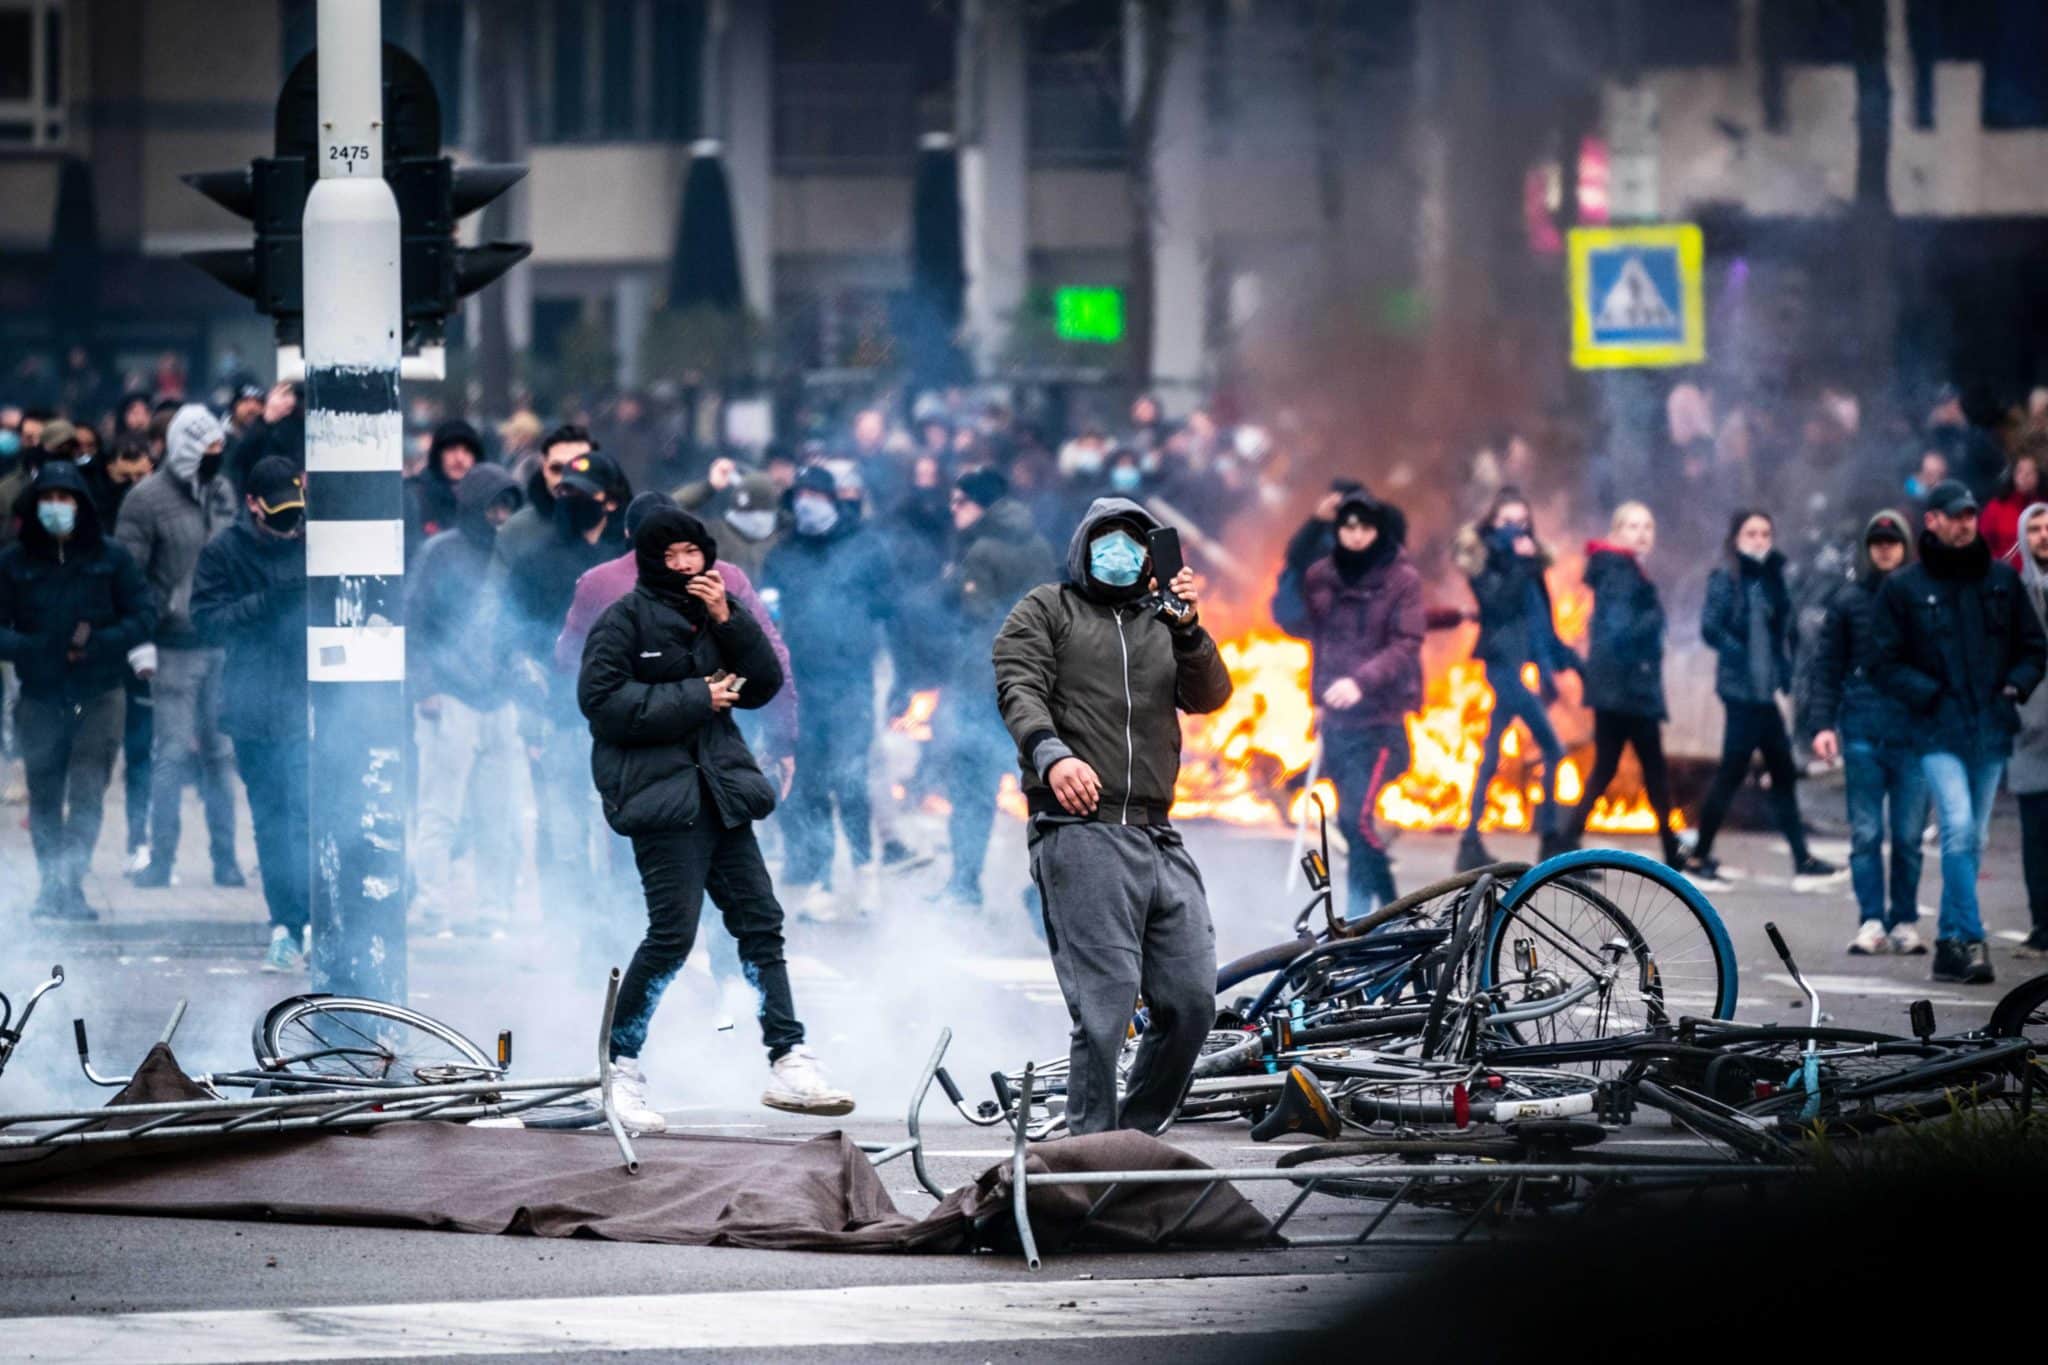 Medidas contra Covid provoca onda de protestos violentos na Europa